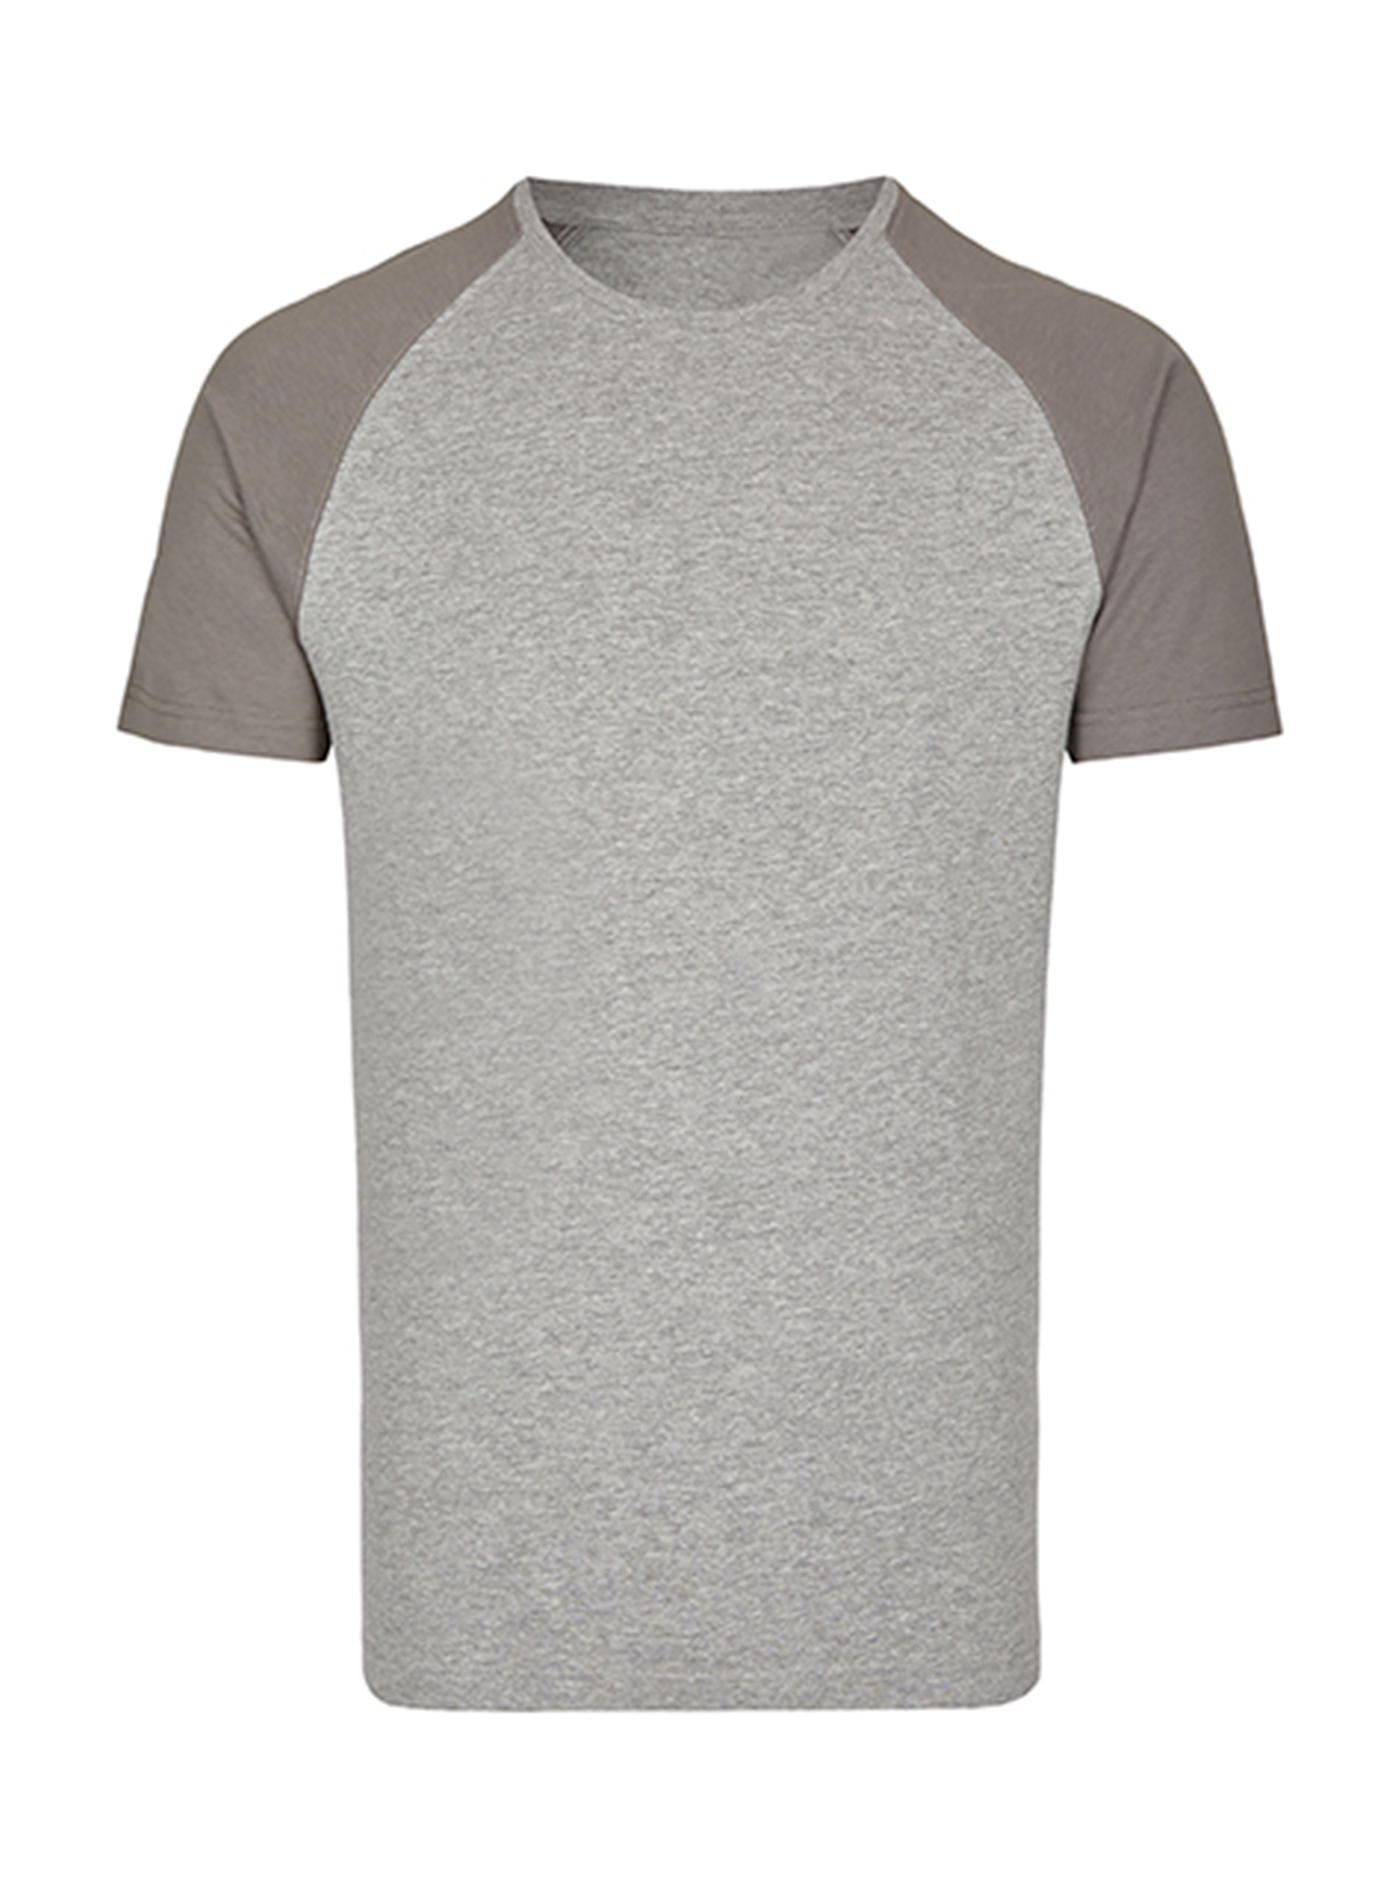 Pánské tričko Miners Mate - Světle šedá XL